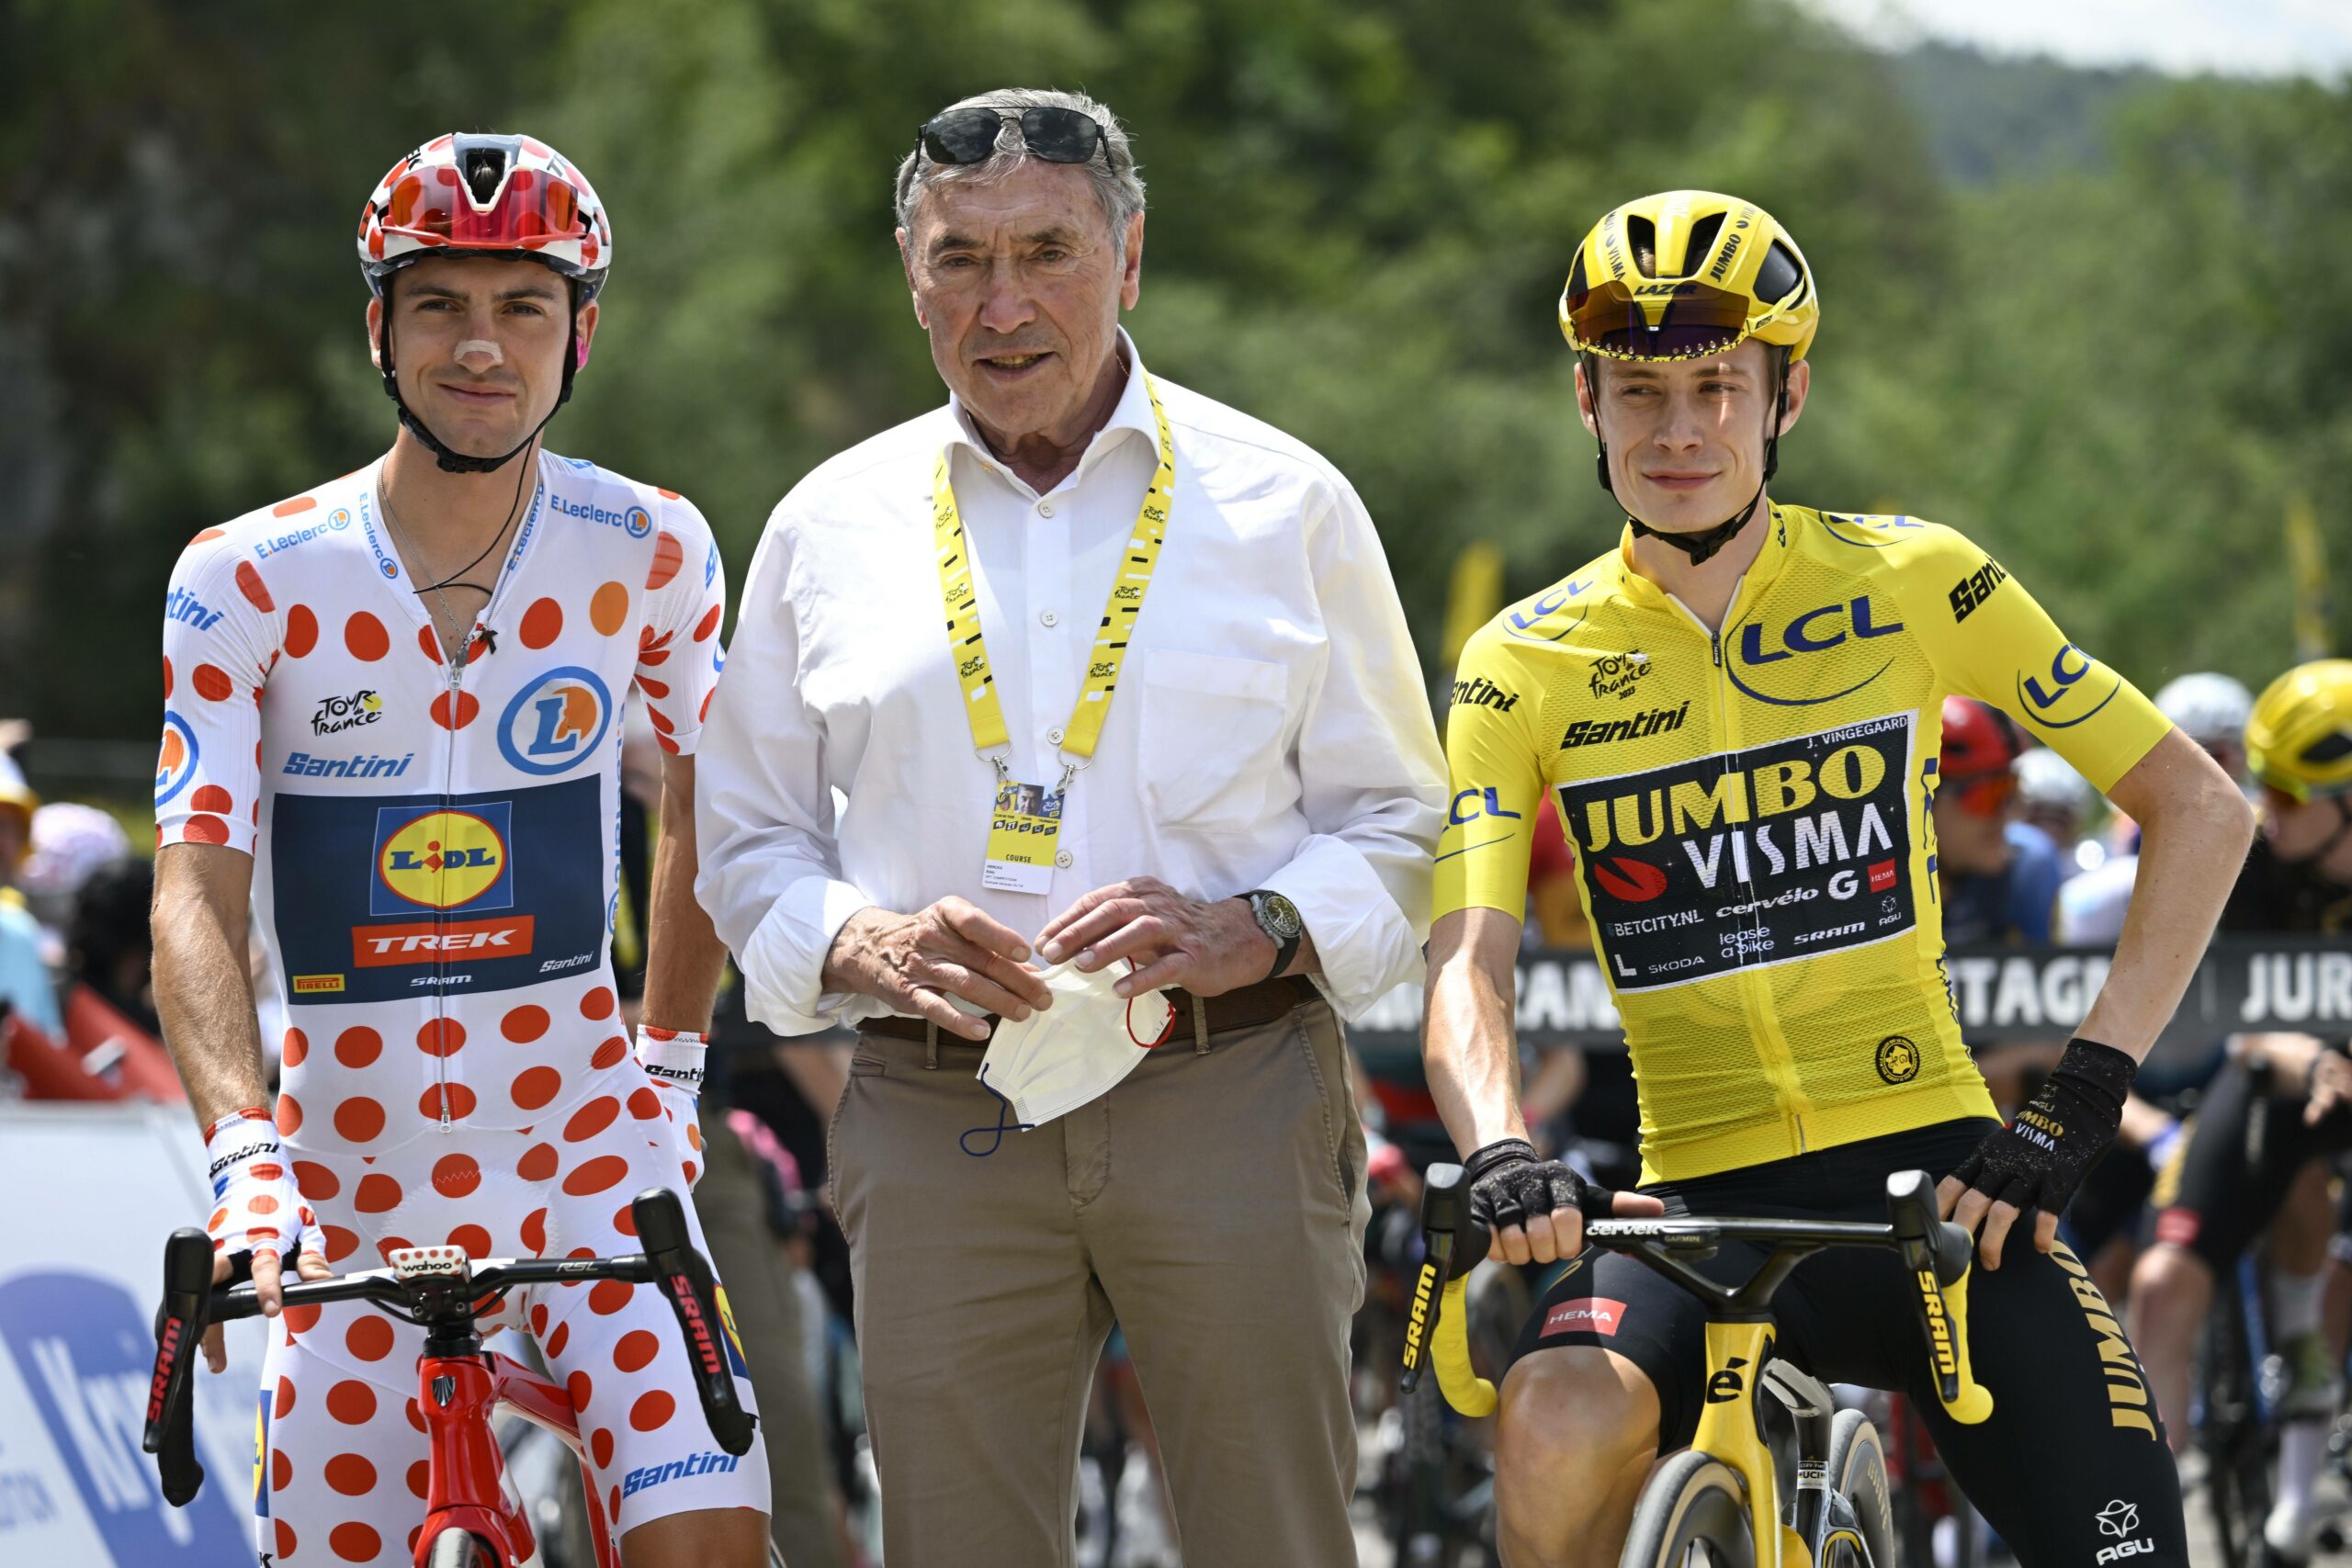 Radsport-Legende Eddy Merckx bei der Tour de France mit den Rad-Profis Giulio Ciccone und Jonas Vingegaard